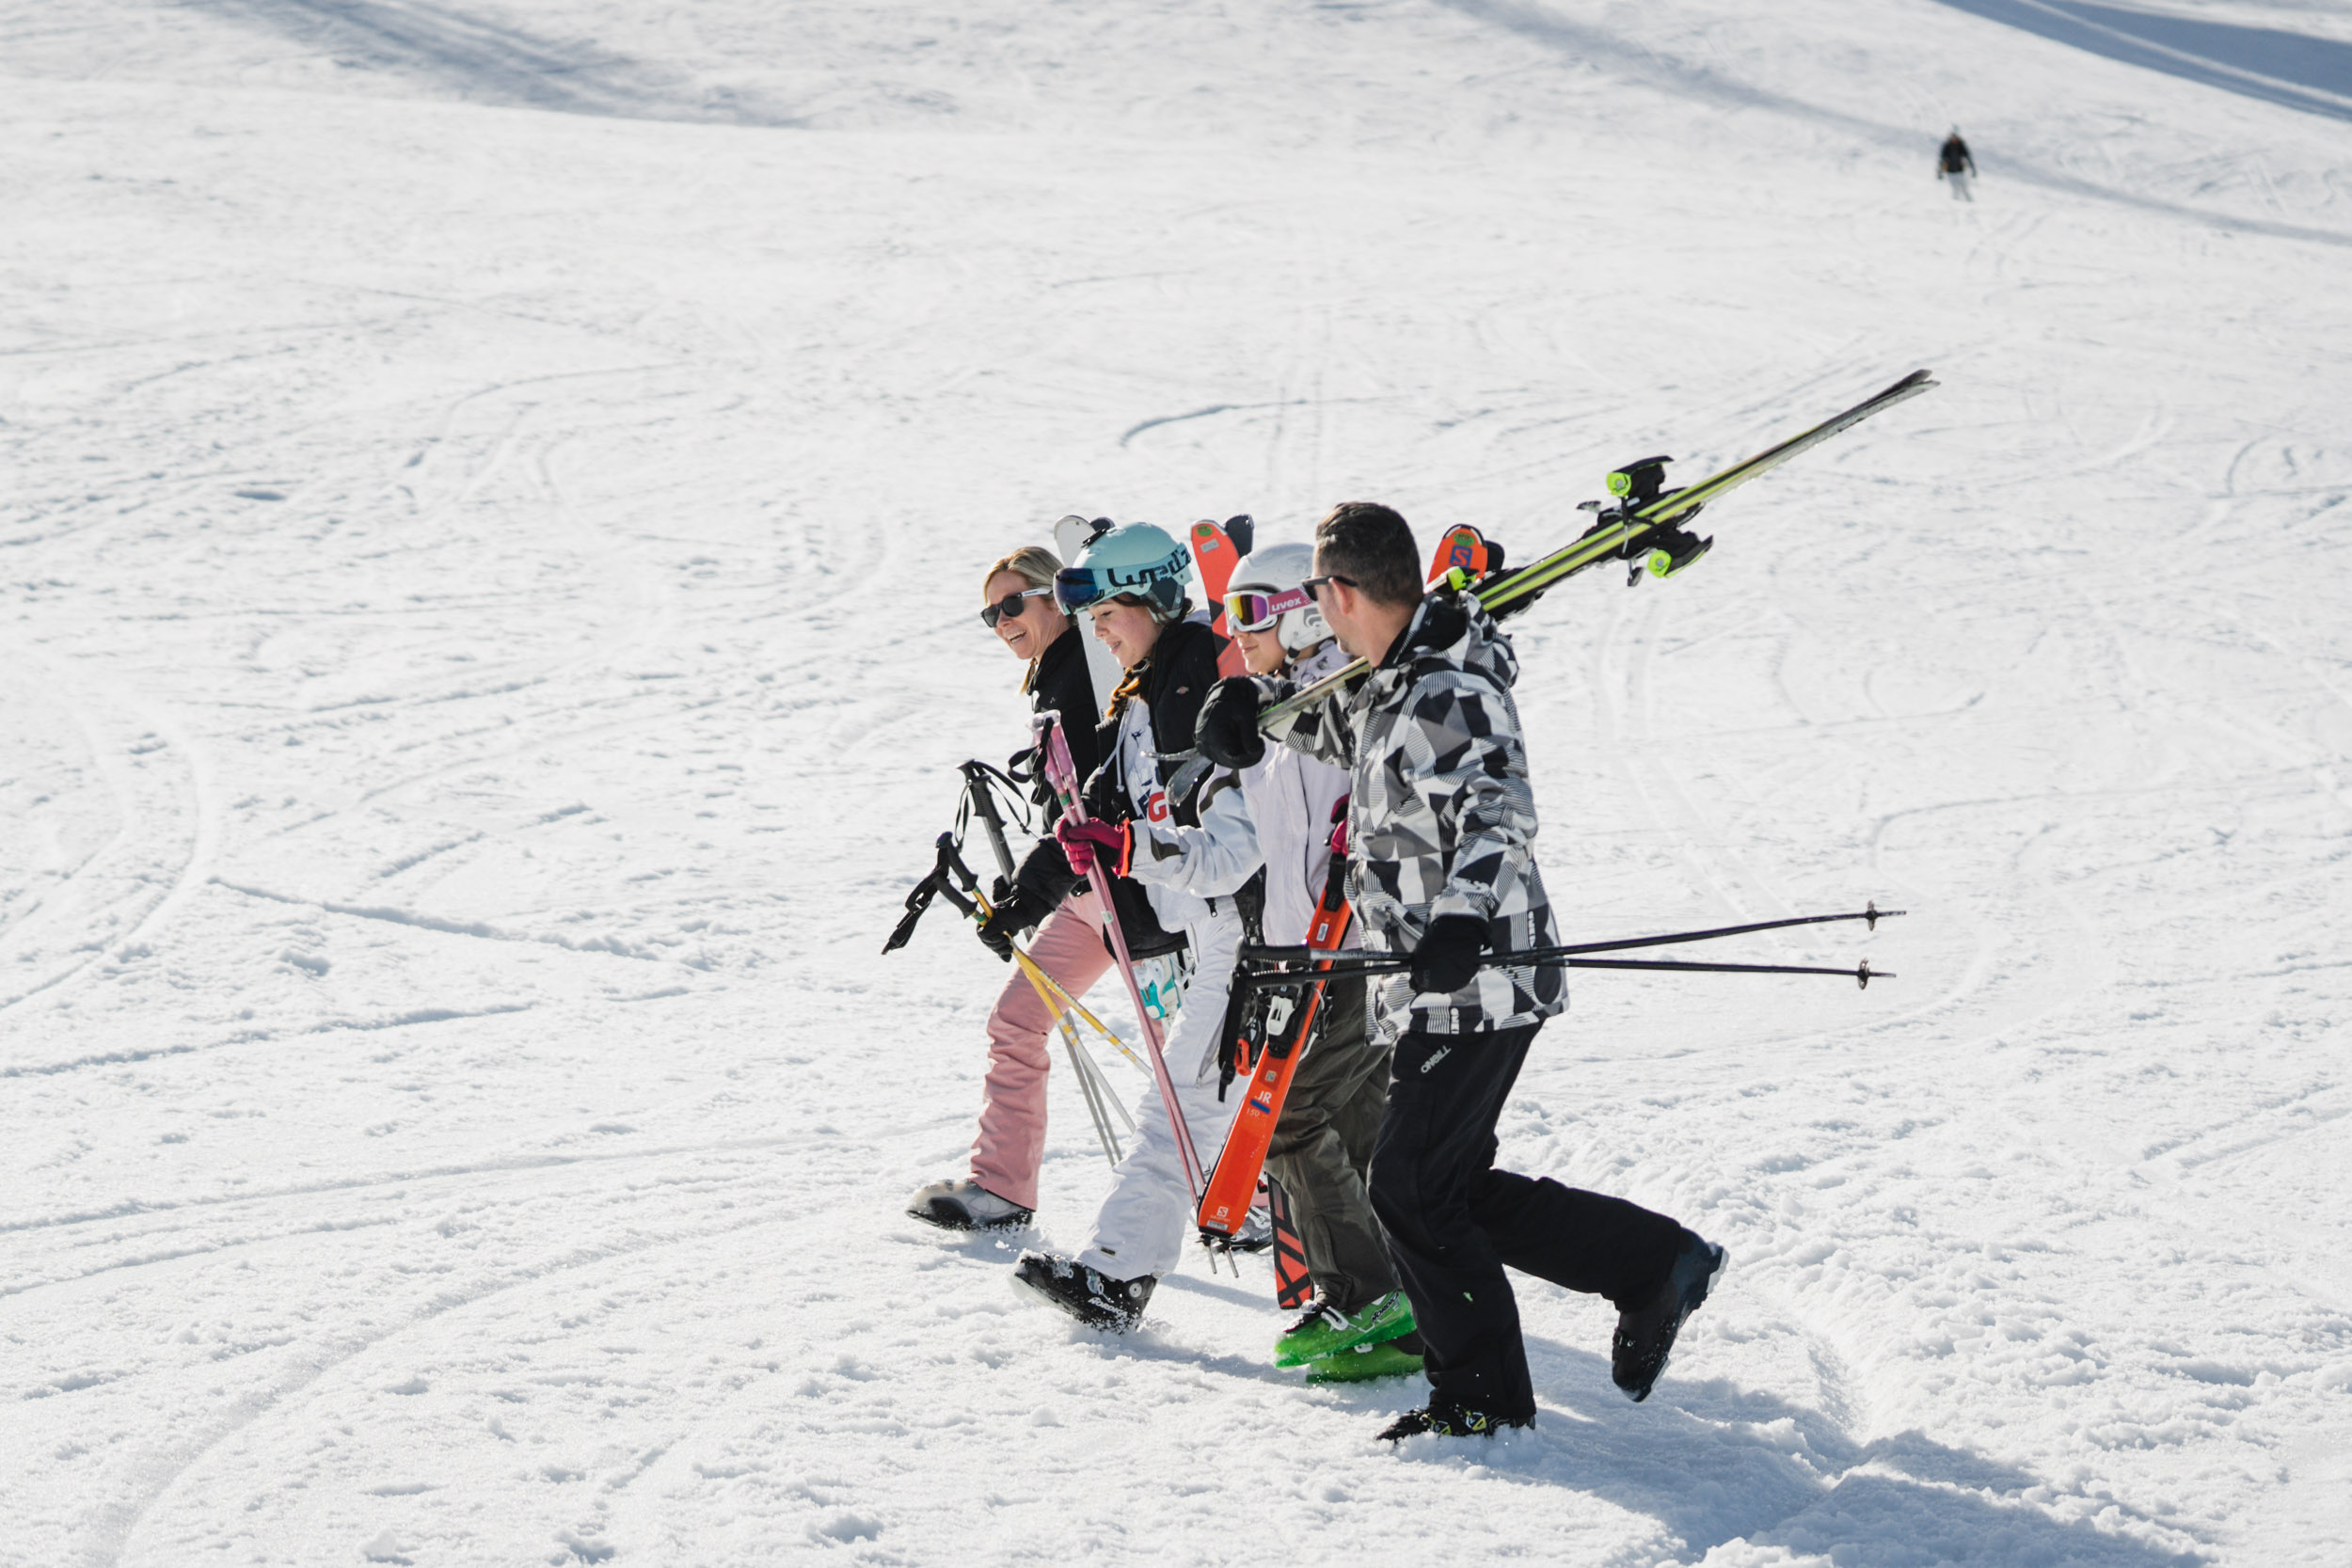 Vacances au ski avec des enfants : France, Italie ou Autriche